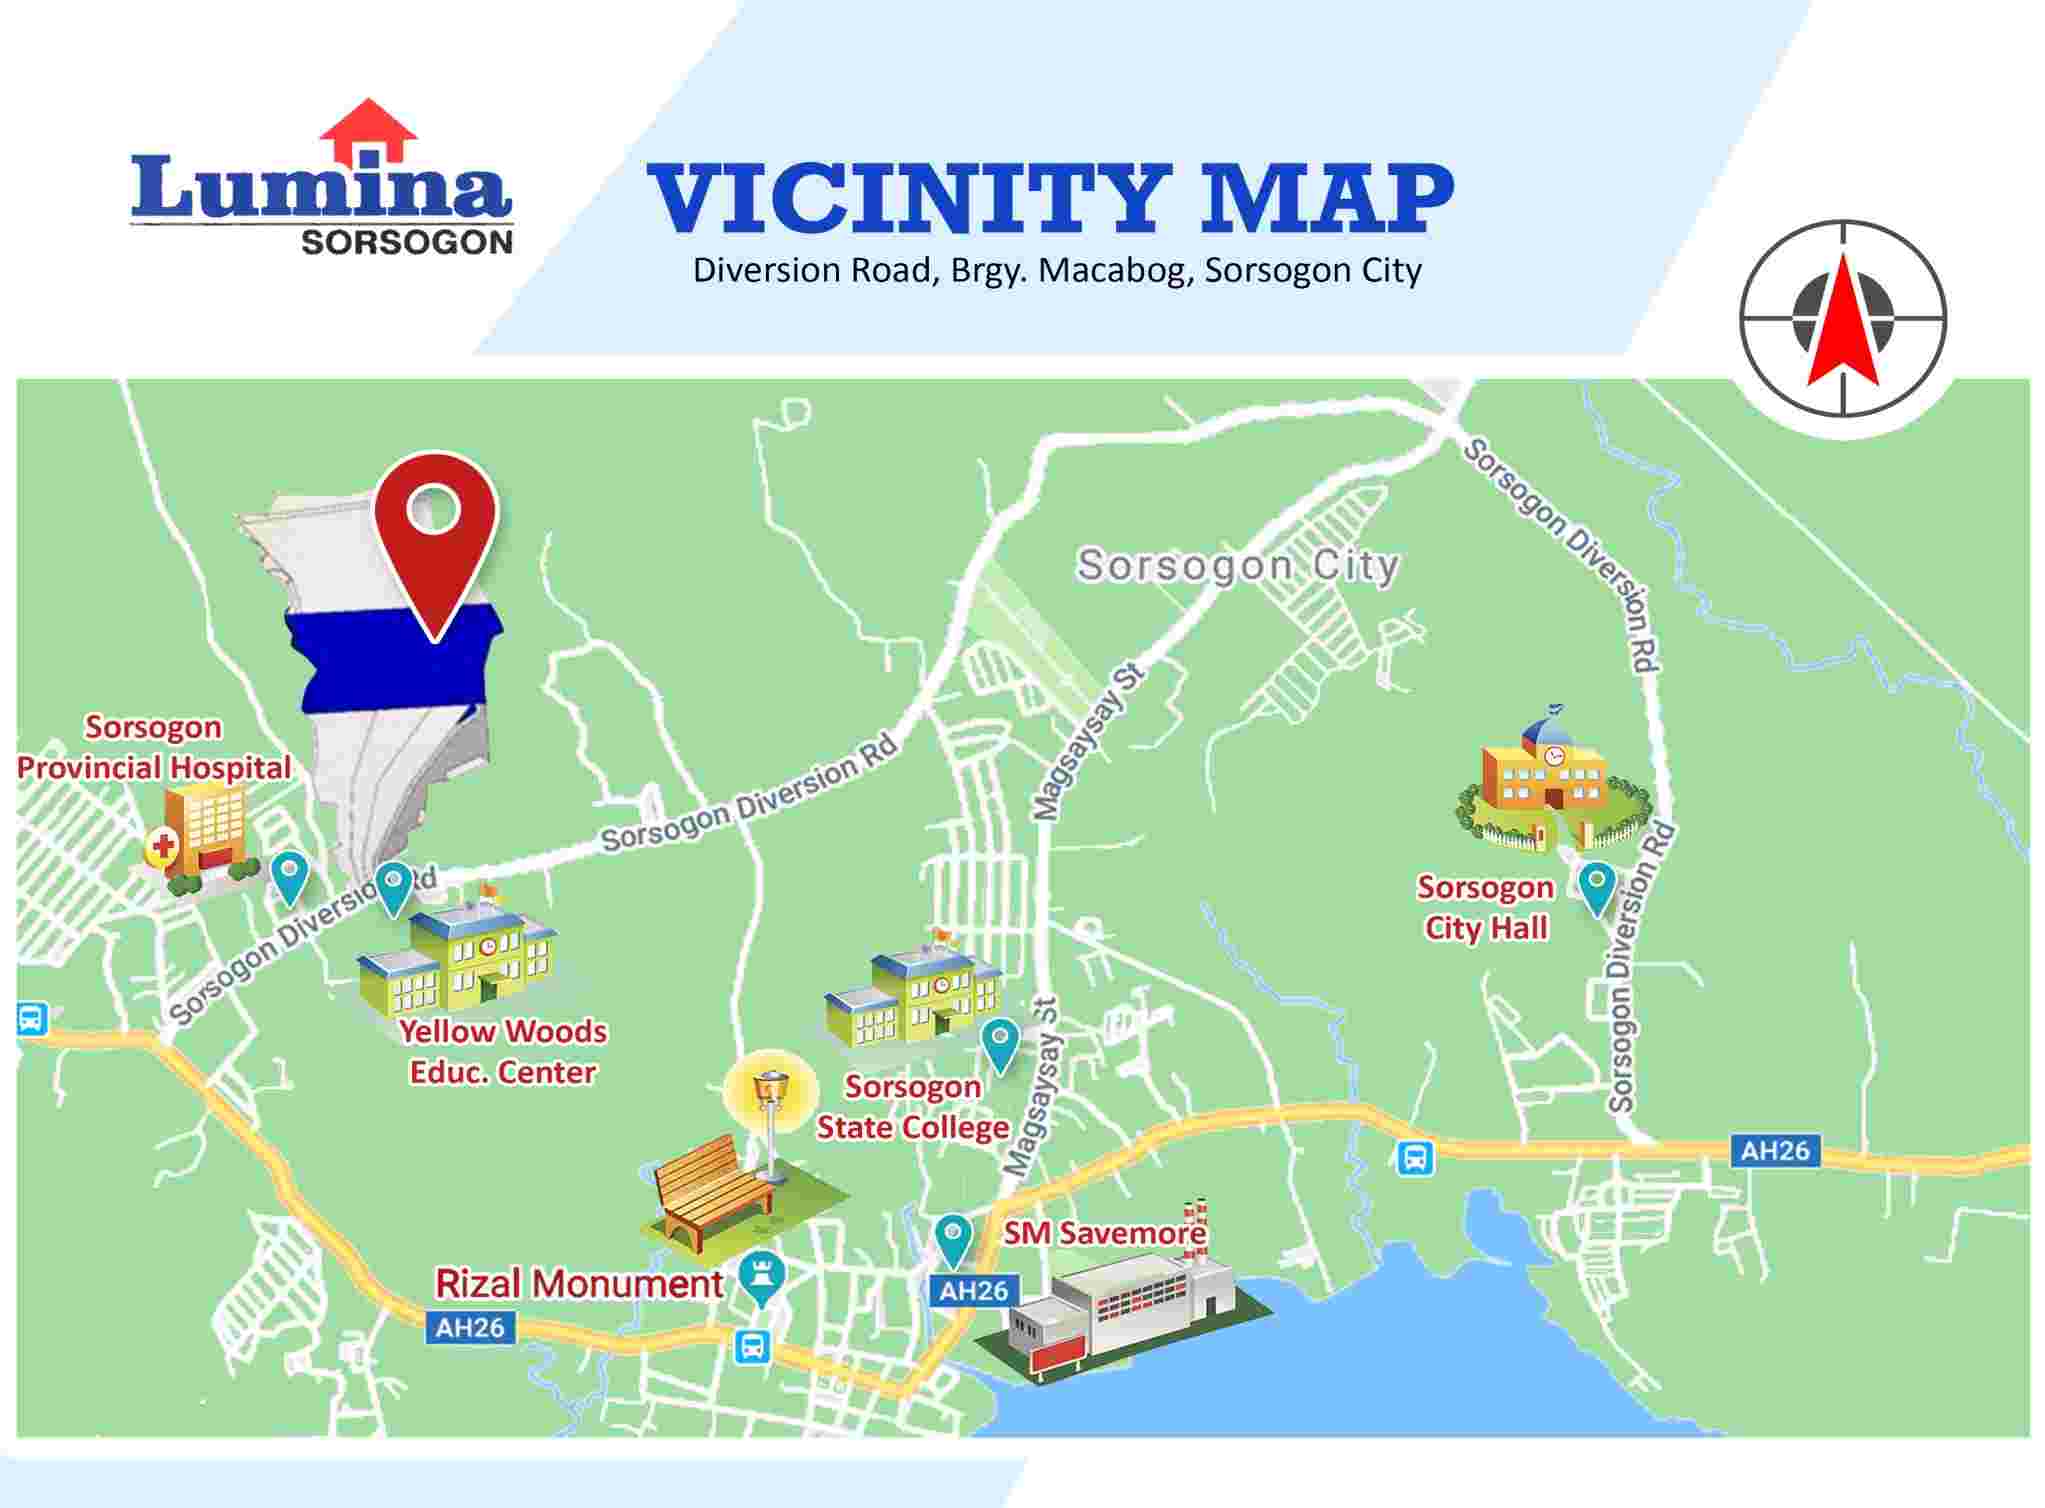 Vicinity-Map-1638774767.jpeg